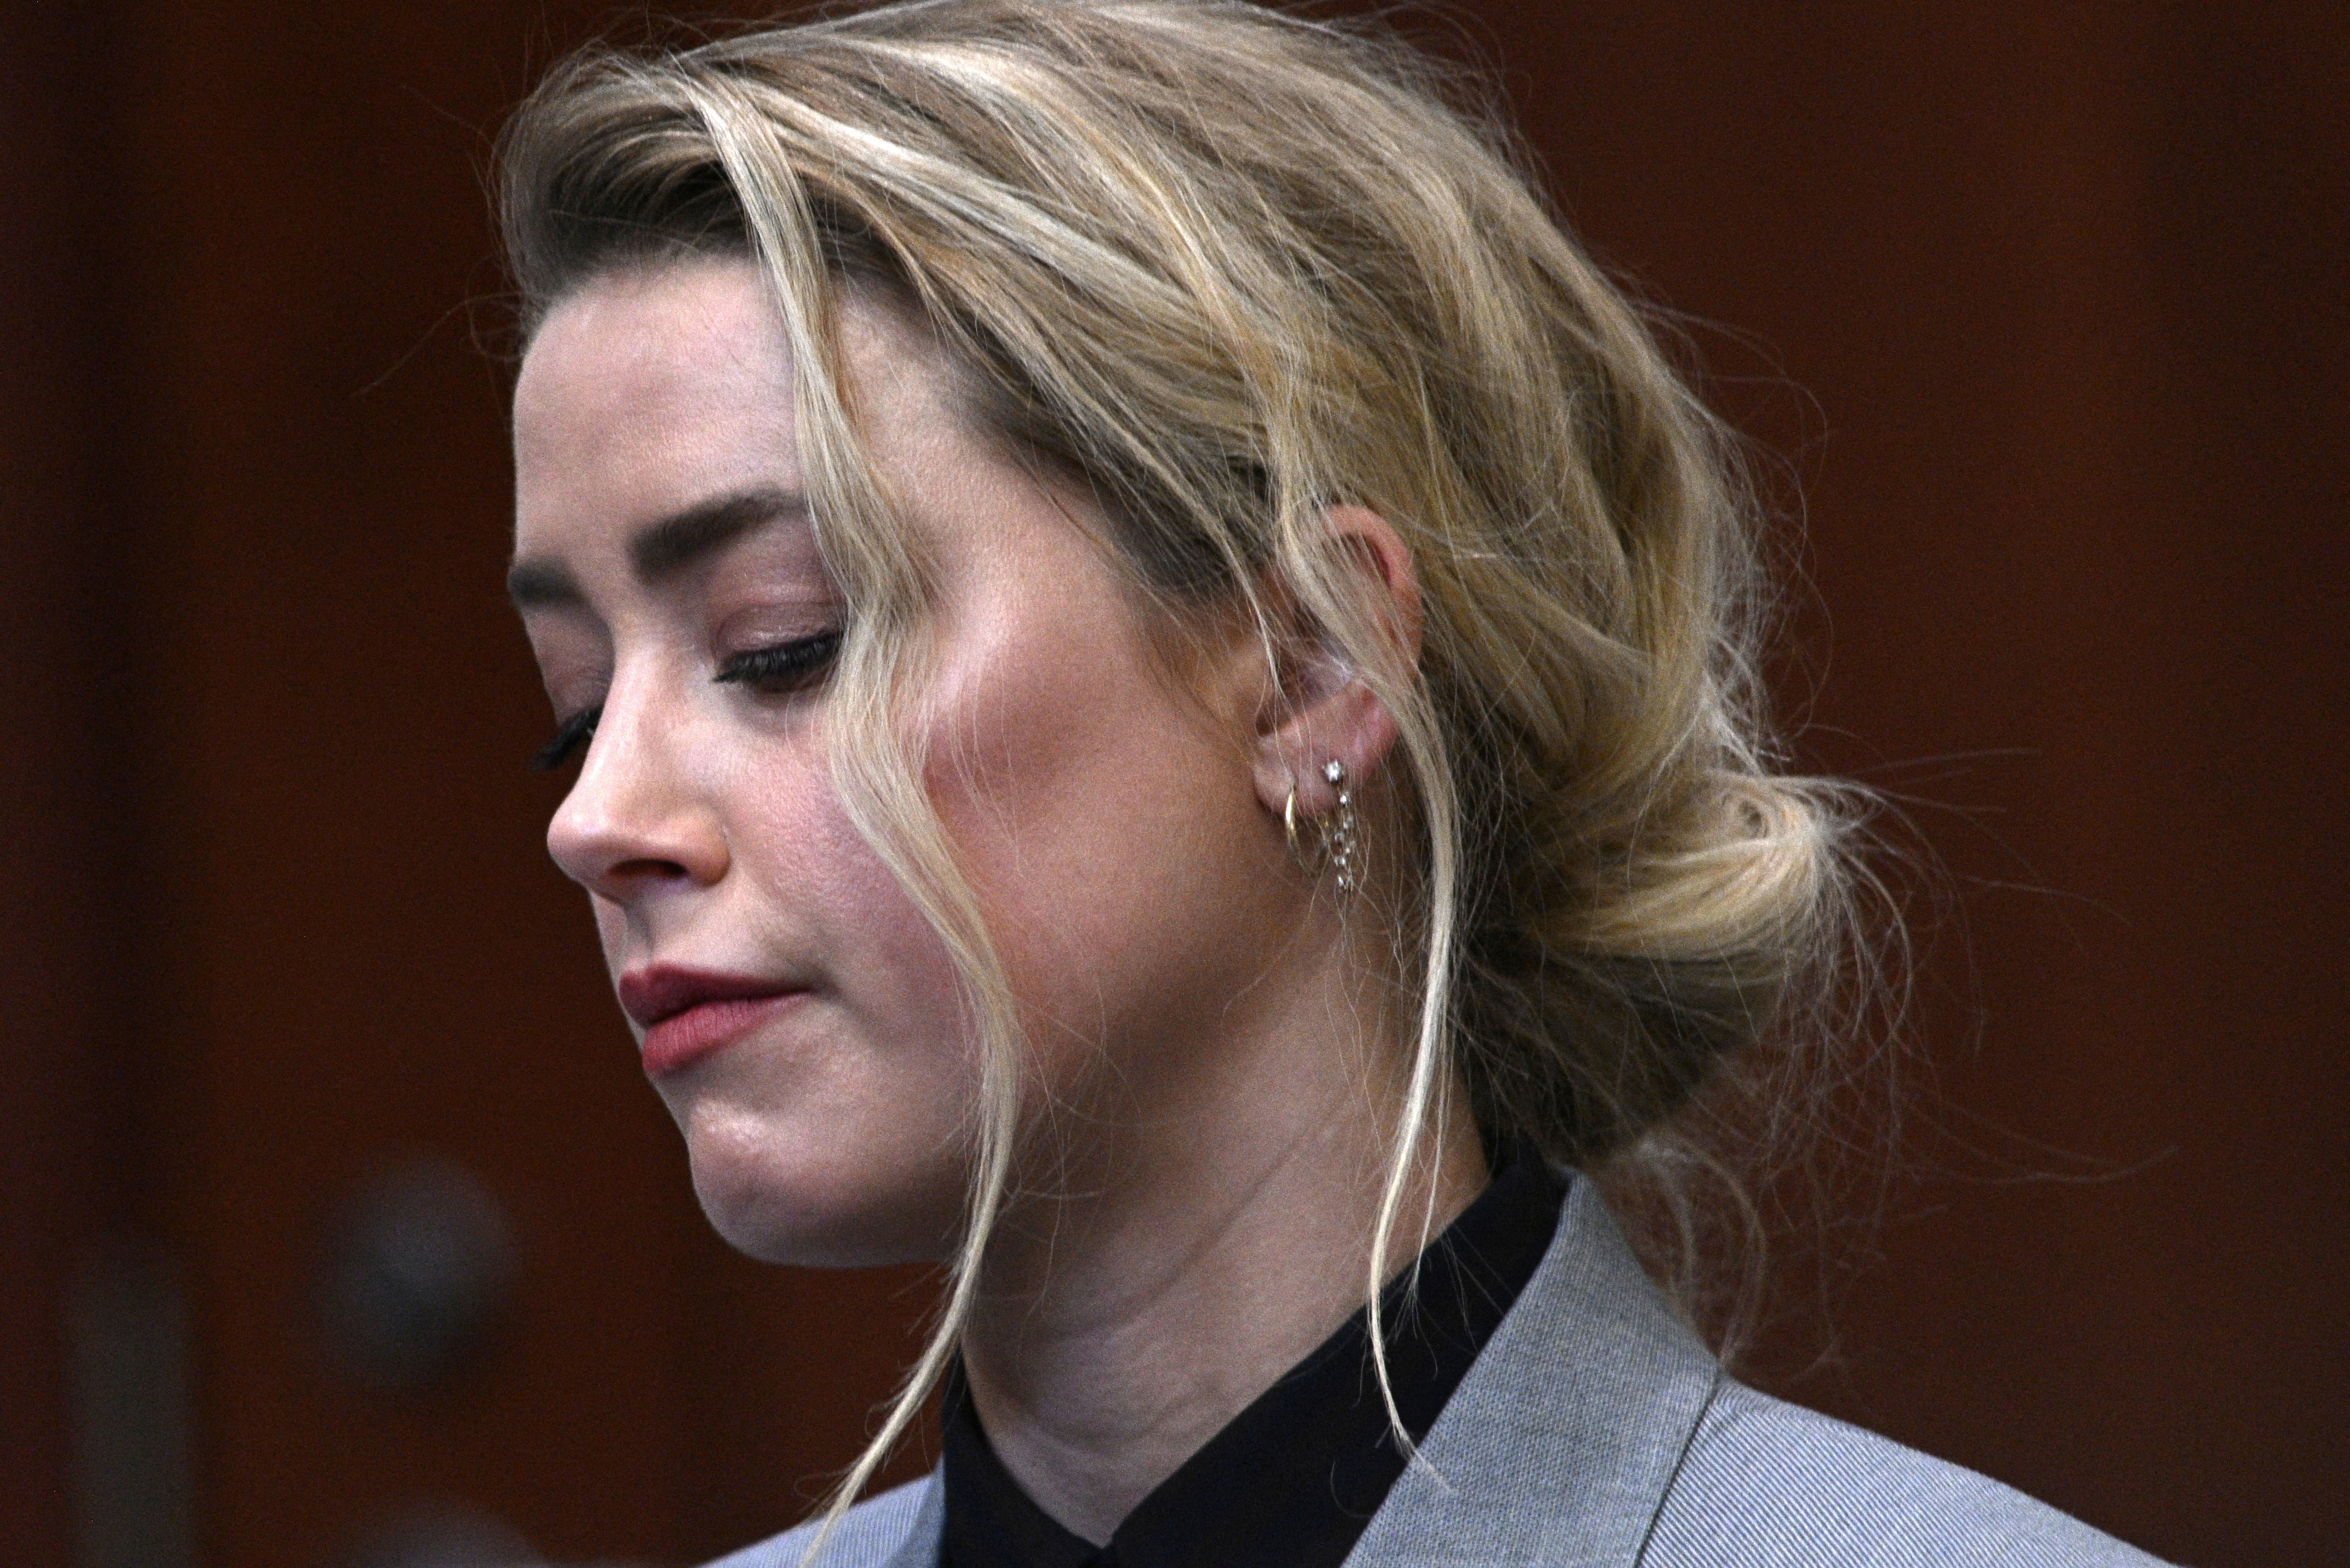 Amber Heard attends a court hearing (Reuters)